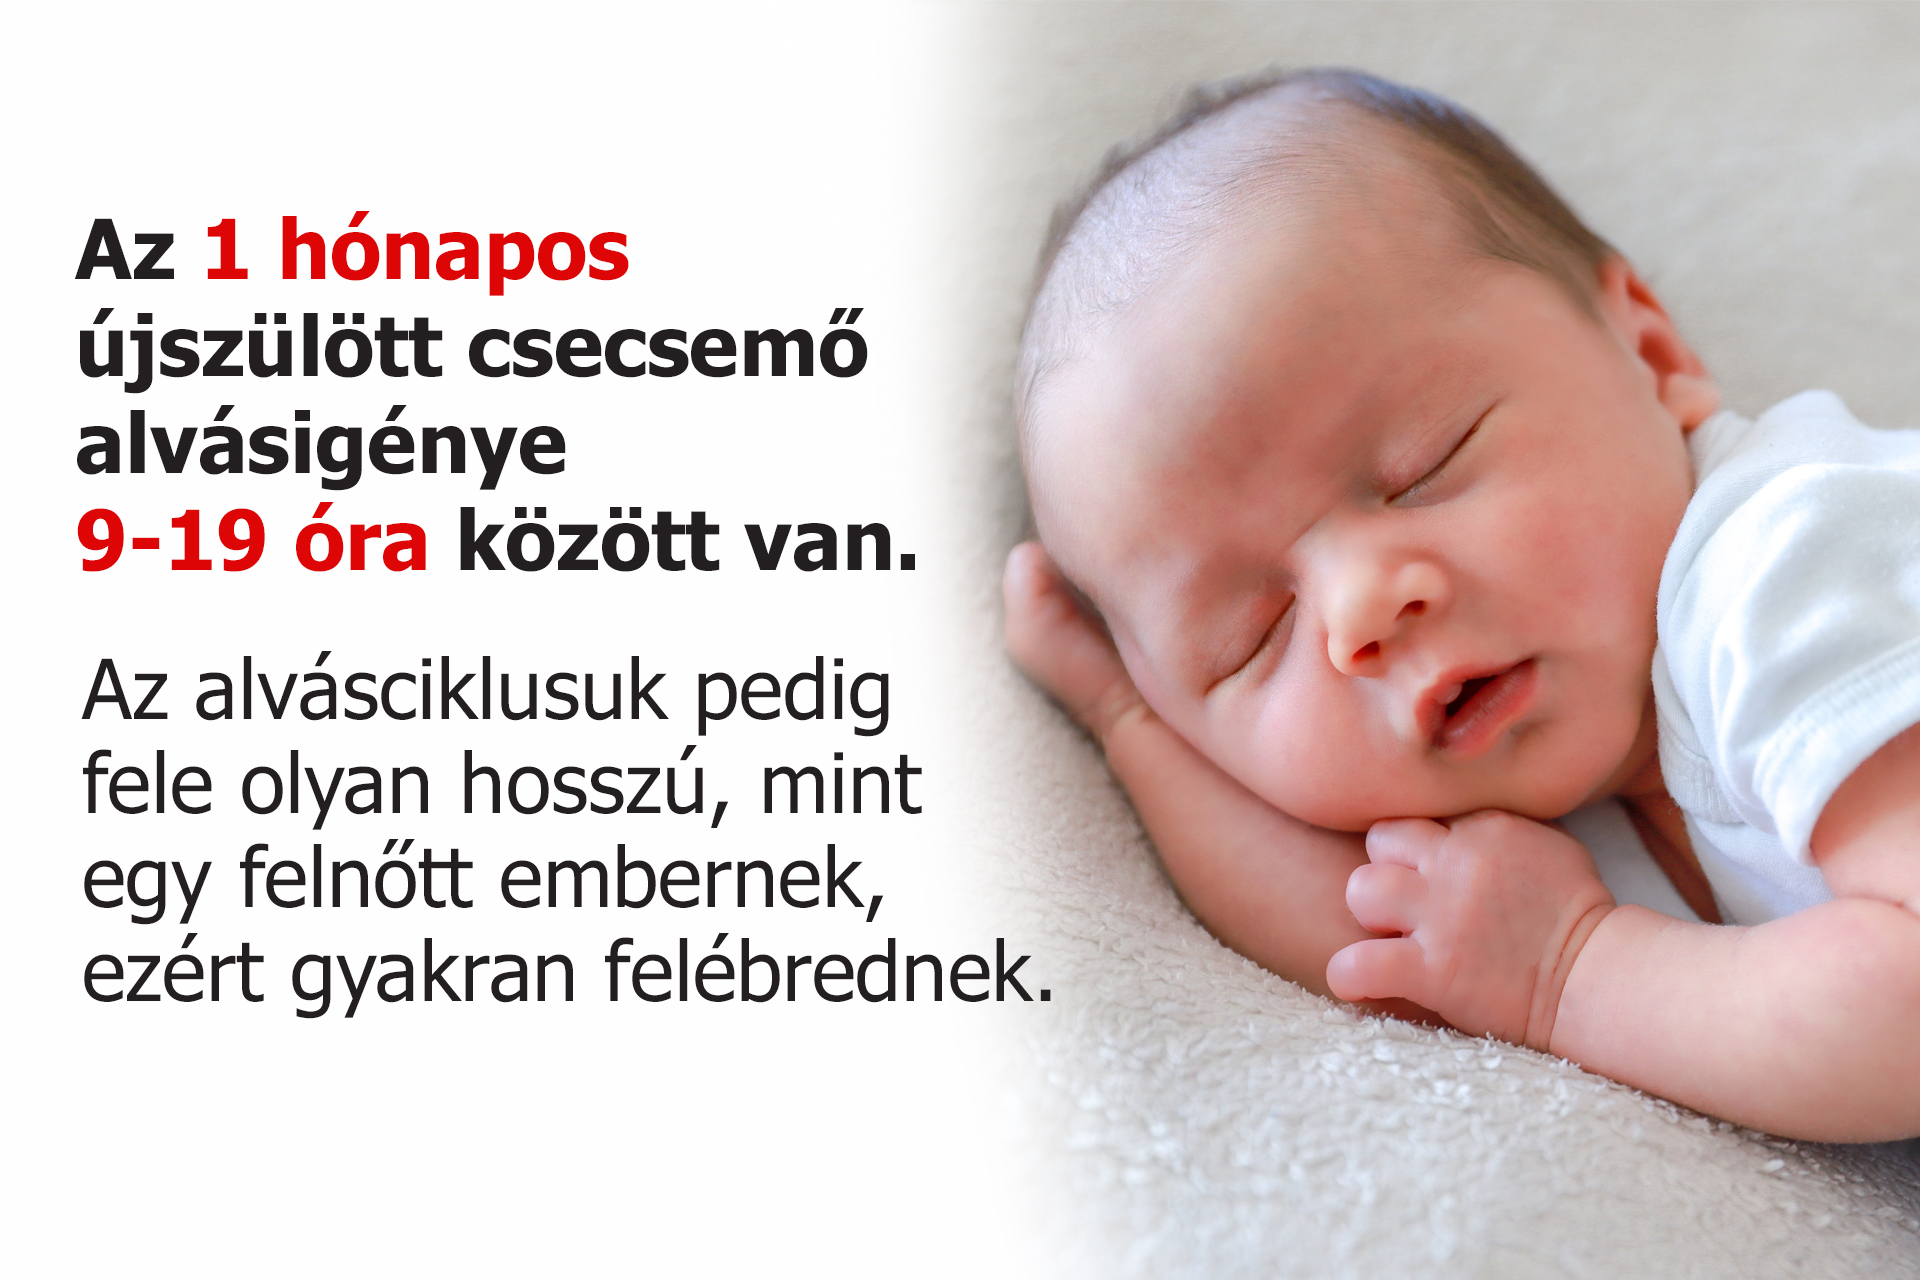 Az 1 hónapos újszülött csecsemő alvásigénye 9-19 óra között van.